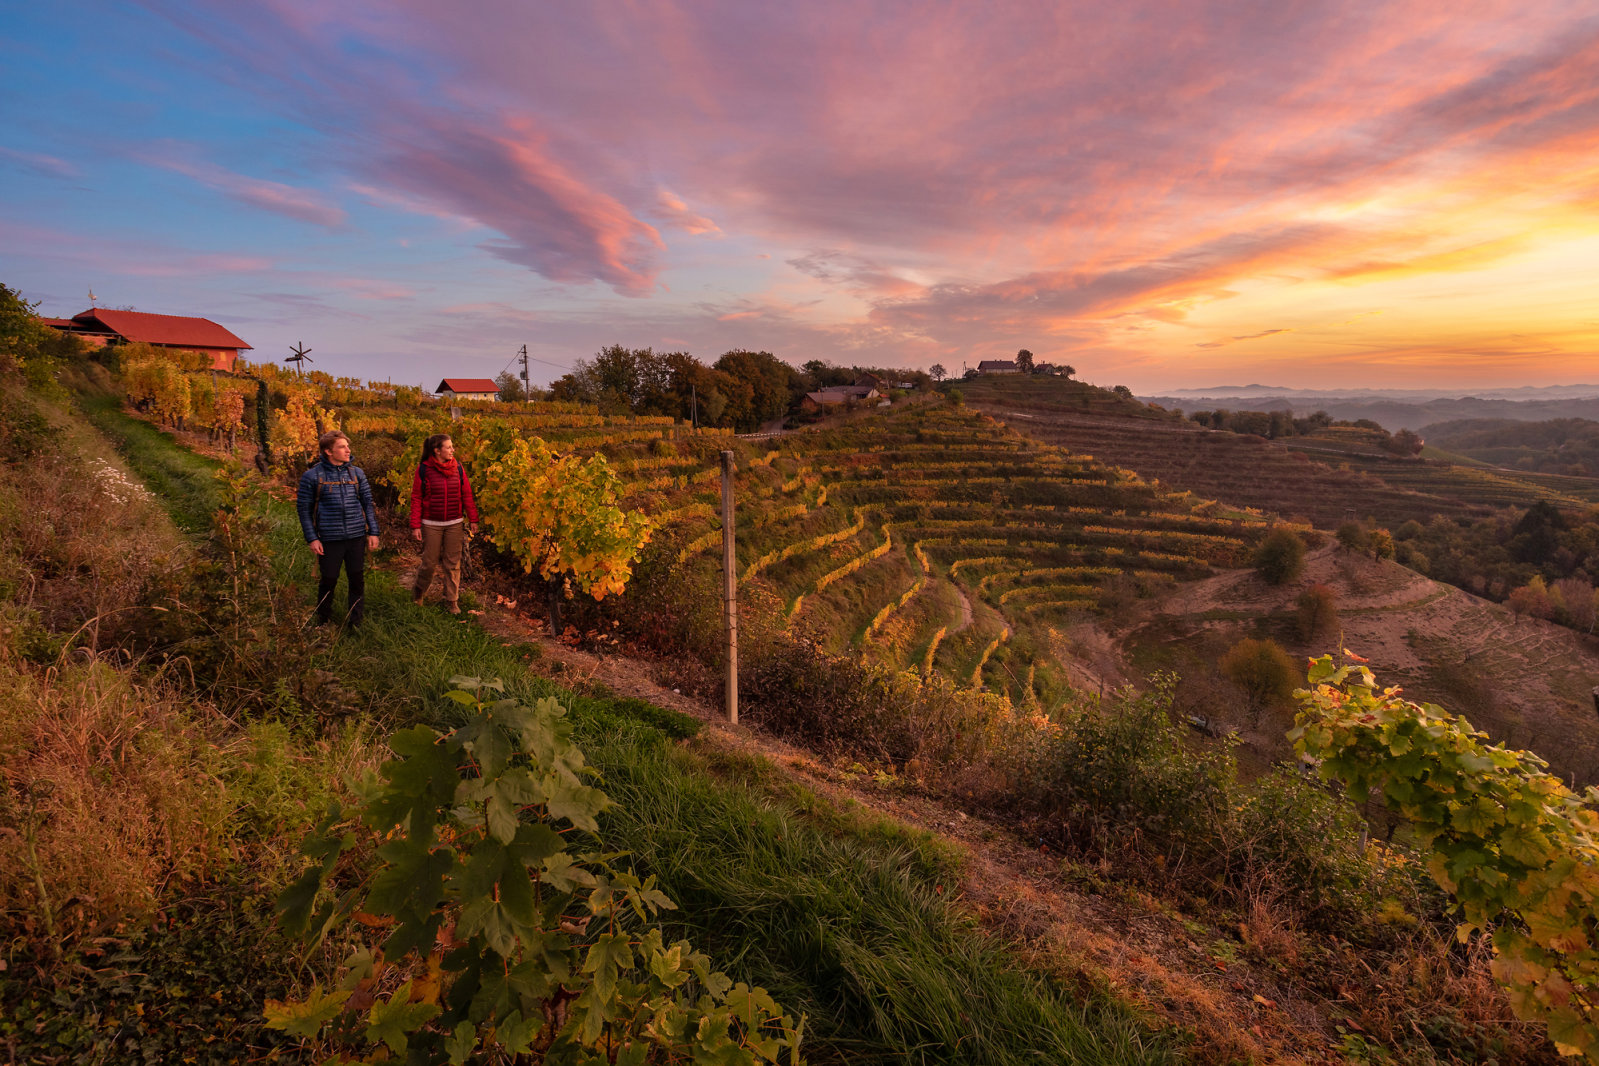 Kirándulás a szőlőtőkék között - Fotó: Jošt Gantar